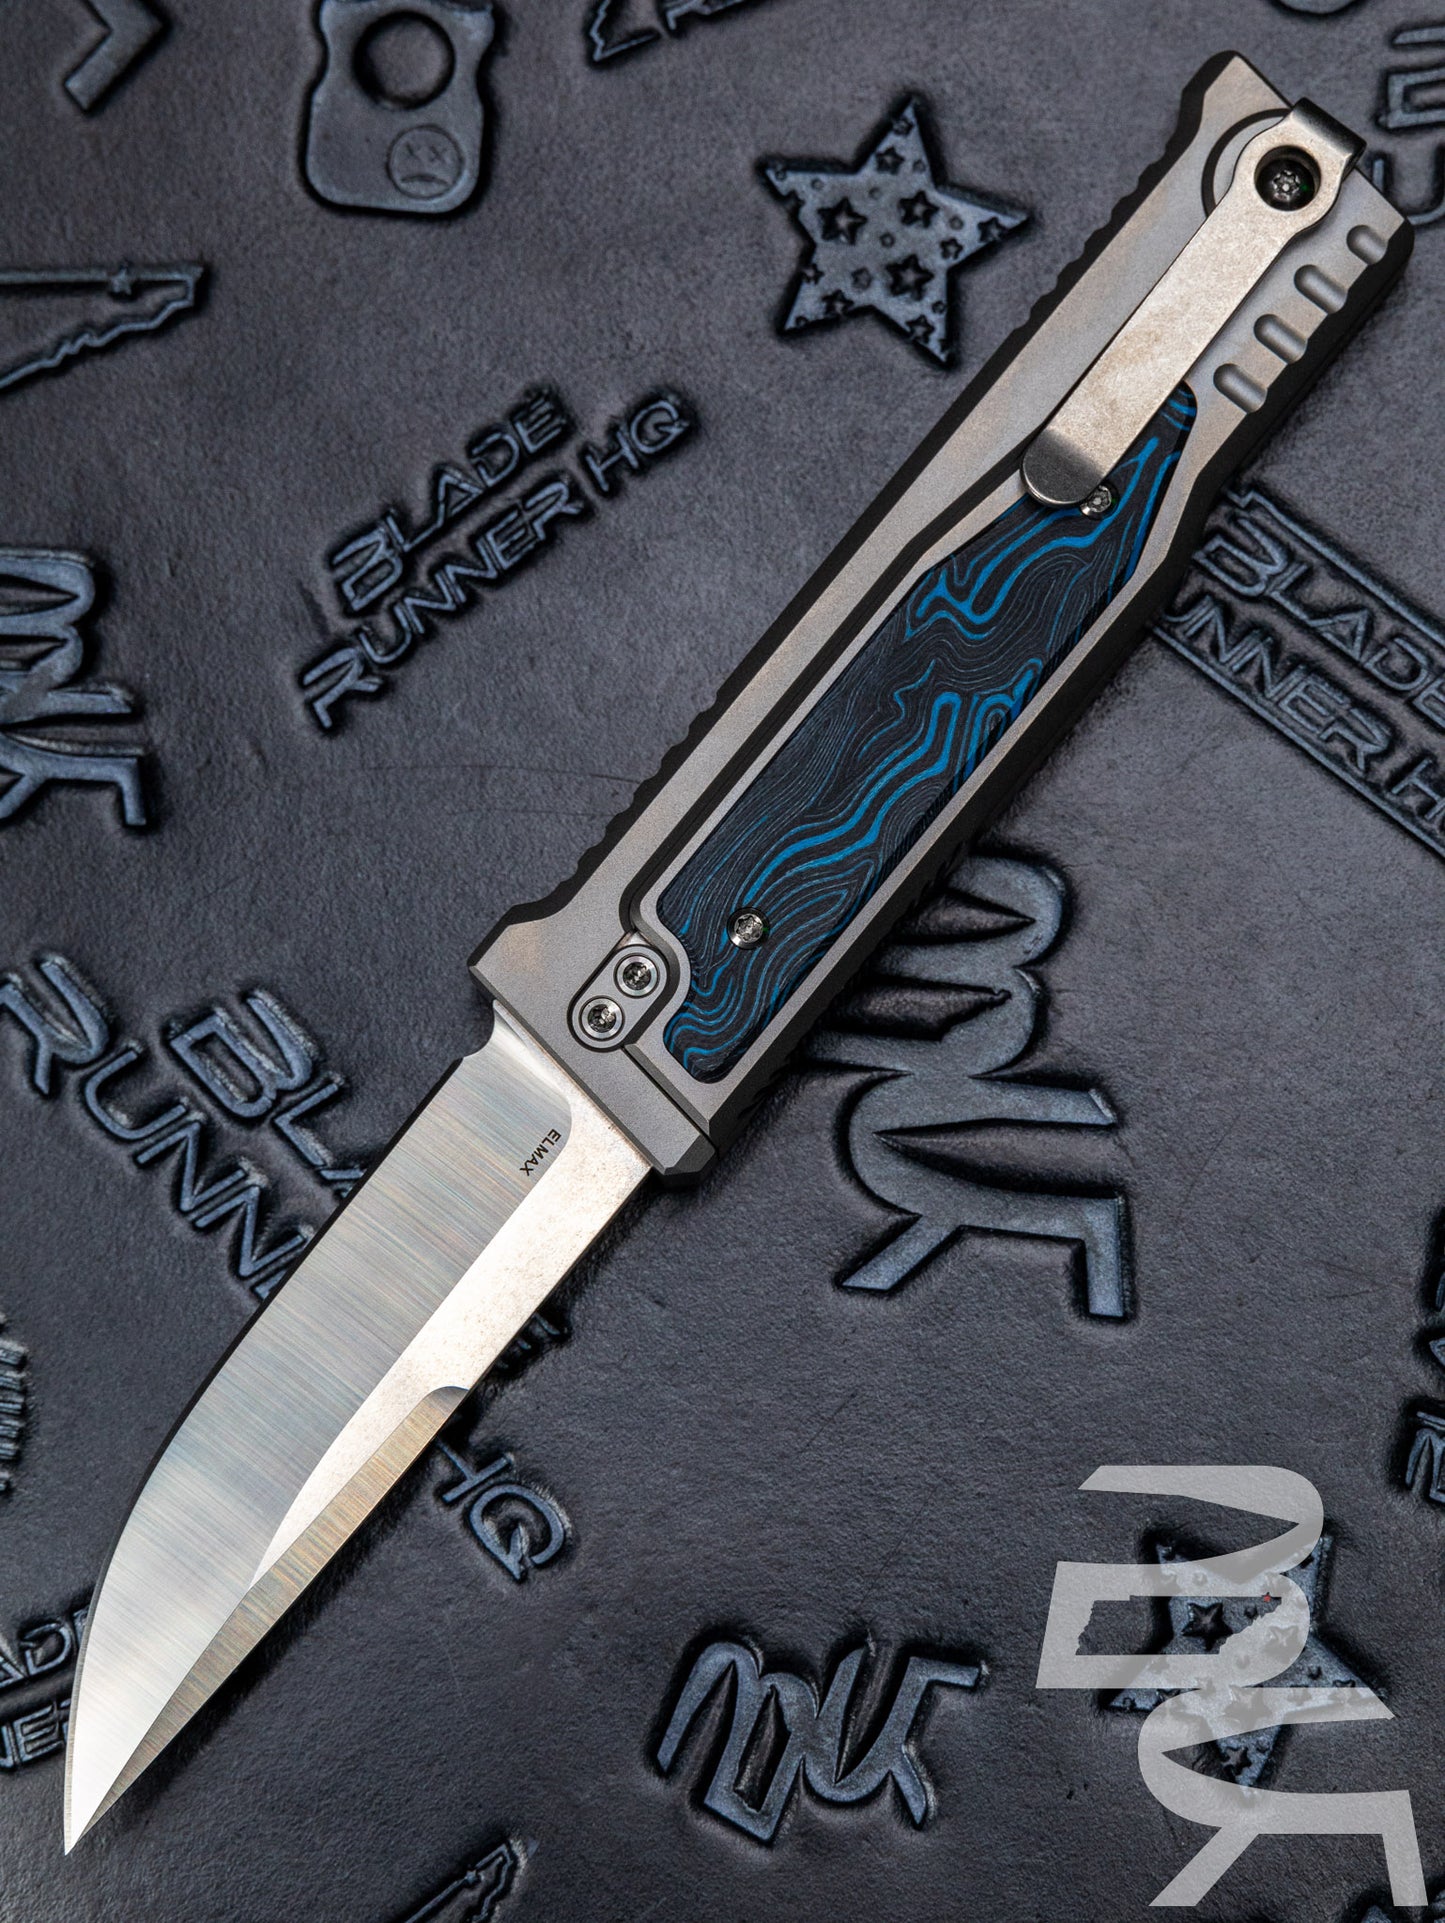 REATE EXO-M G10 BLACK/WHITE OTF KNIFE TITANIUM 2.95" DROP POINT SATIN